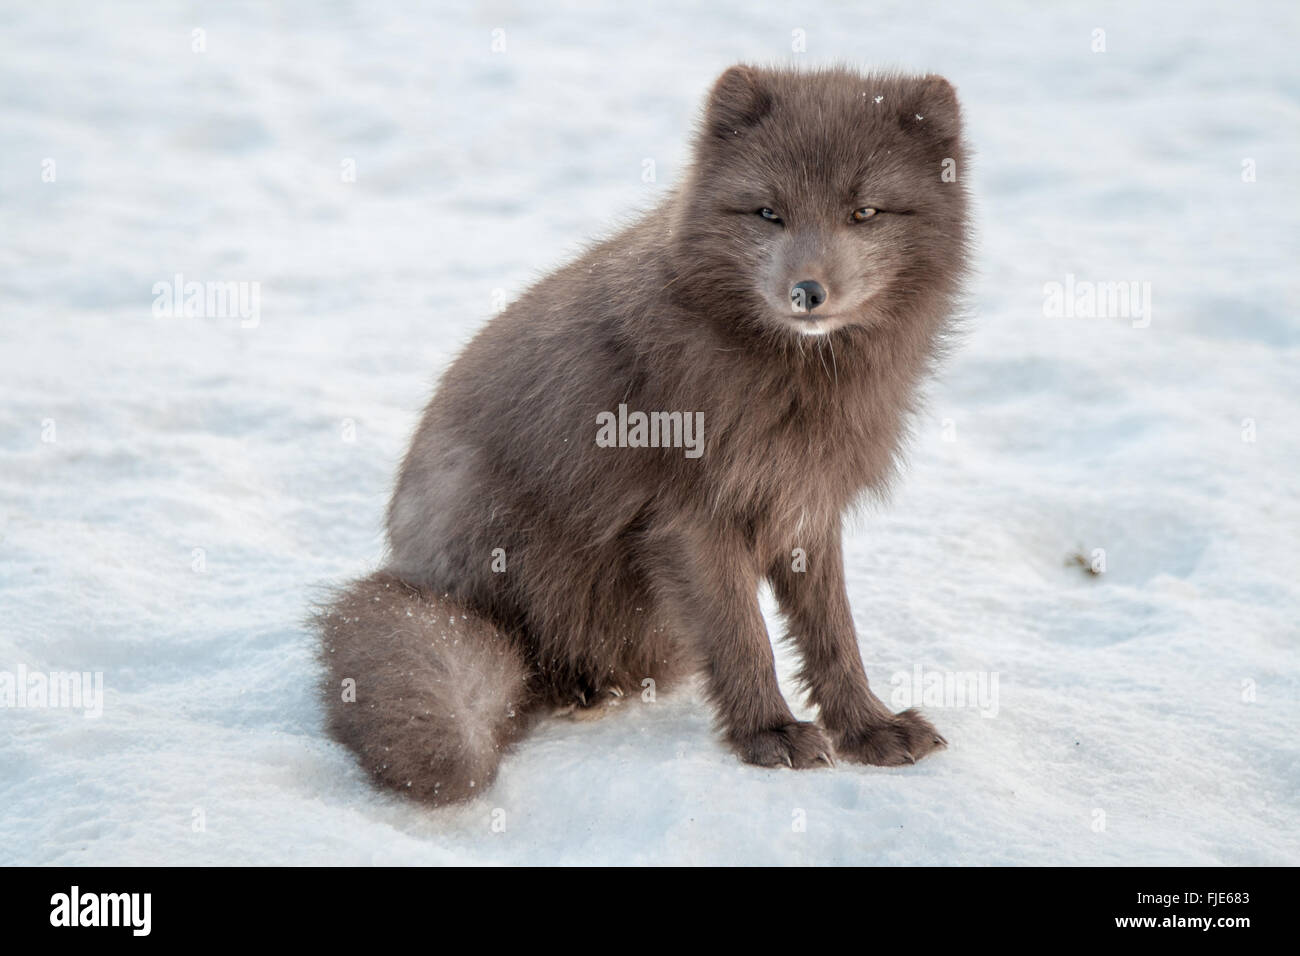 Arctic Fox, Thorsmork, Iceland Stock Photo